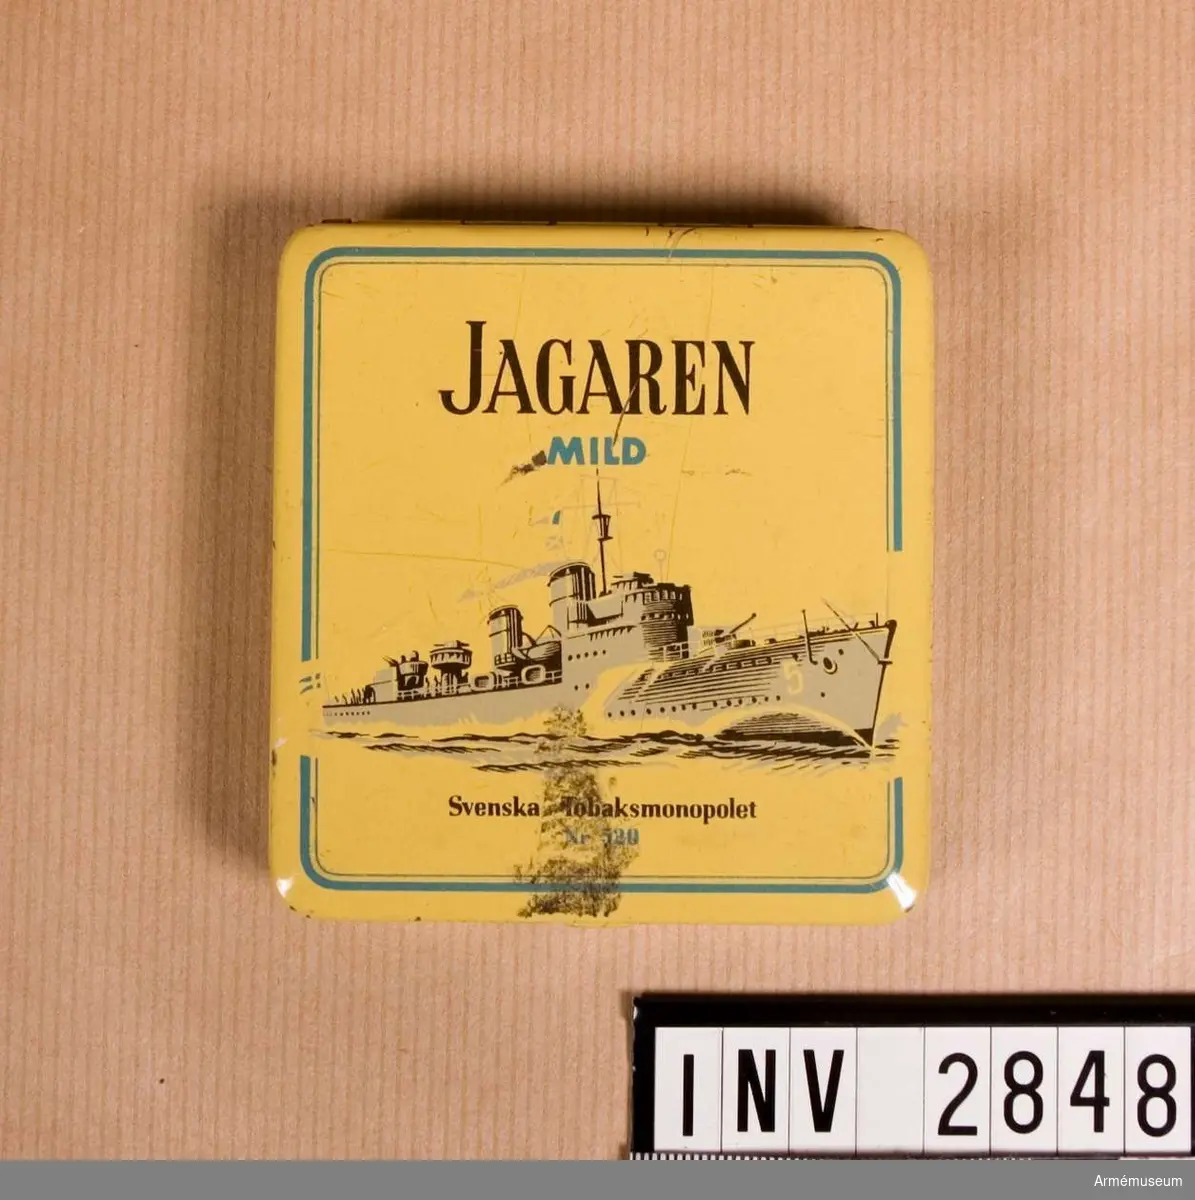 Ask med uppfällbart lock, använd till så kallad piptobak. På locket står "JAGAREN" och under "MILD" samt bild av en jagare i full gång. Under fartyget står "Svenska Tobaksmonopolet nr 520".